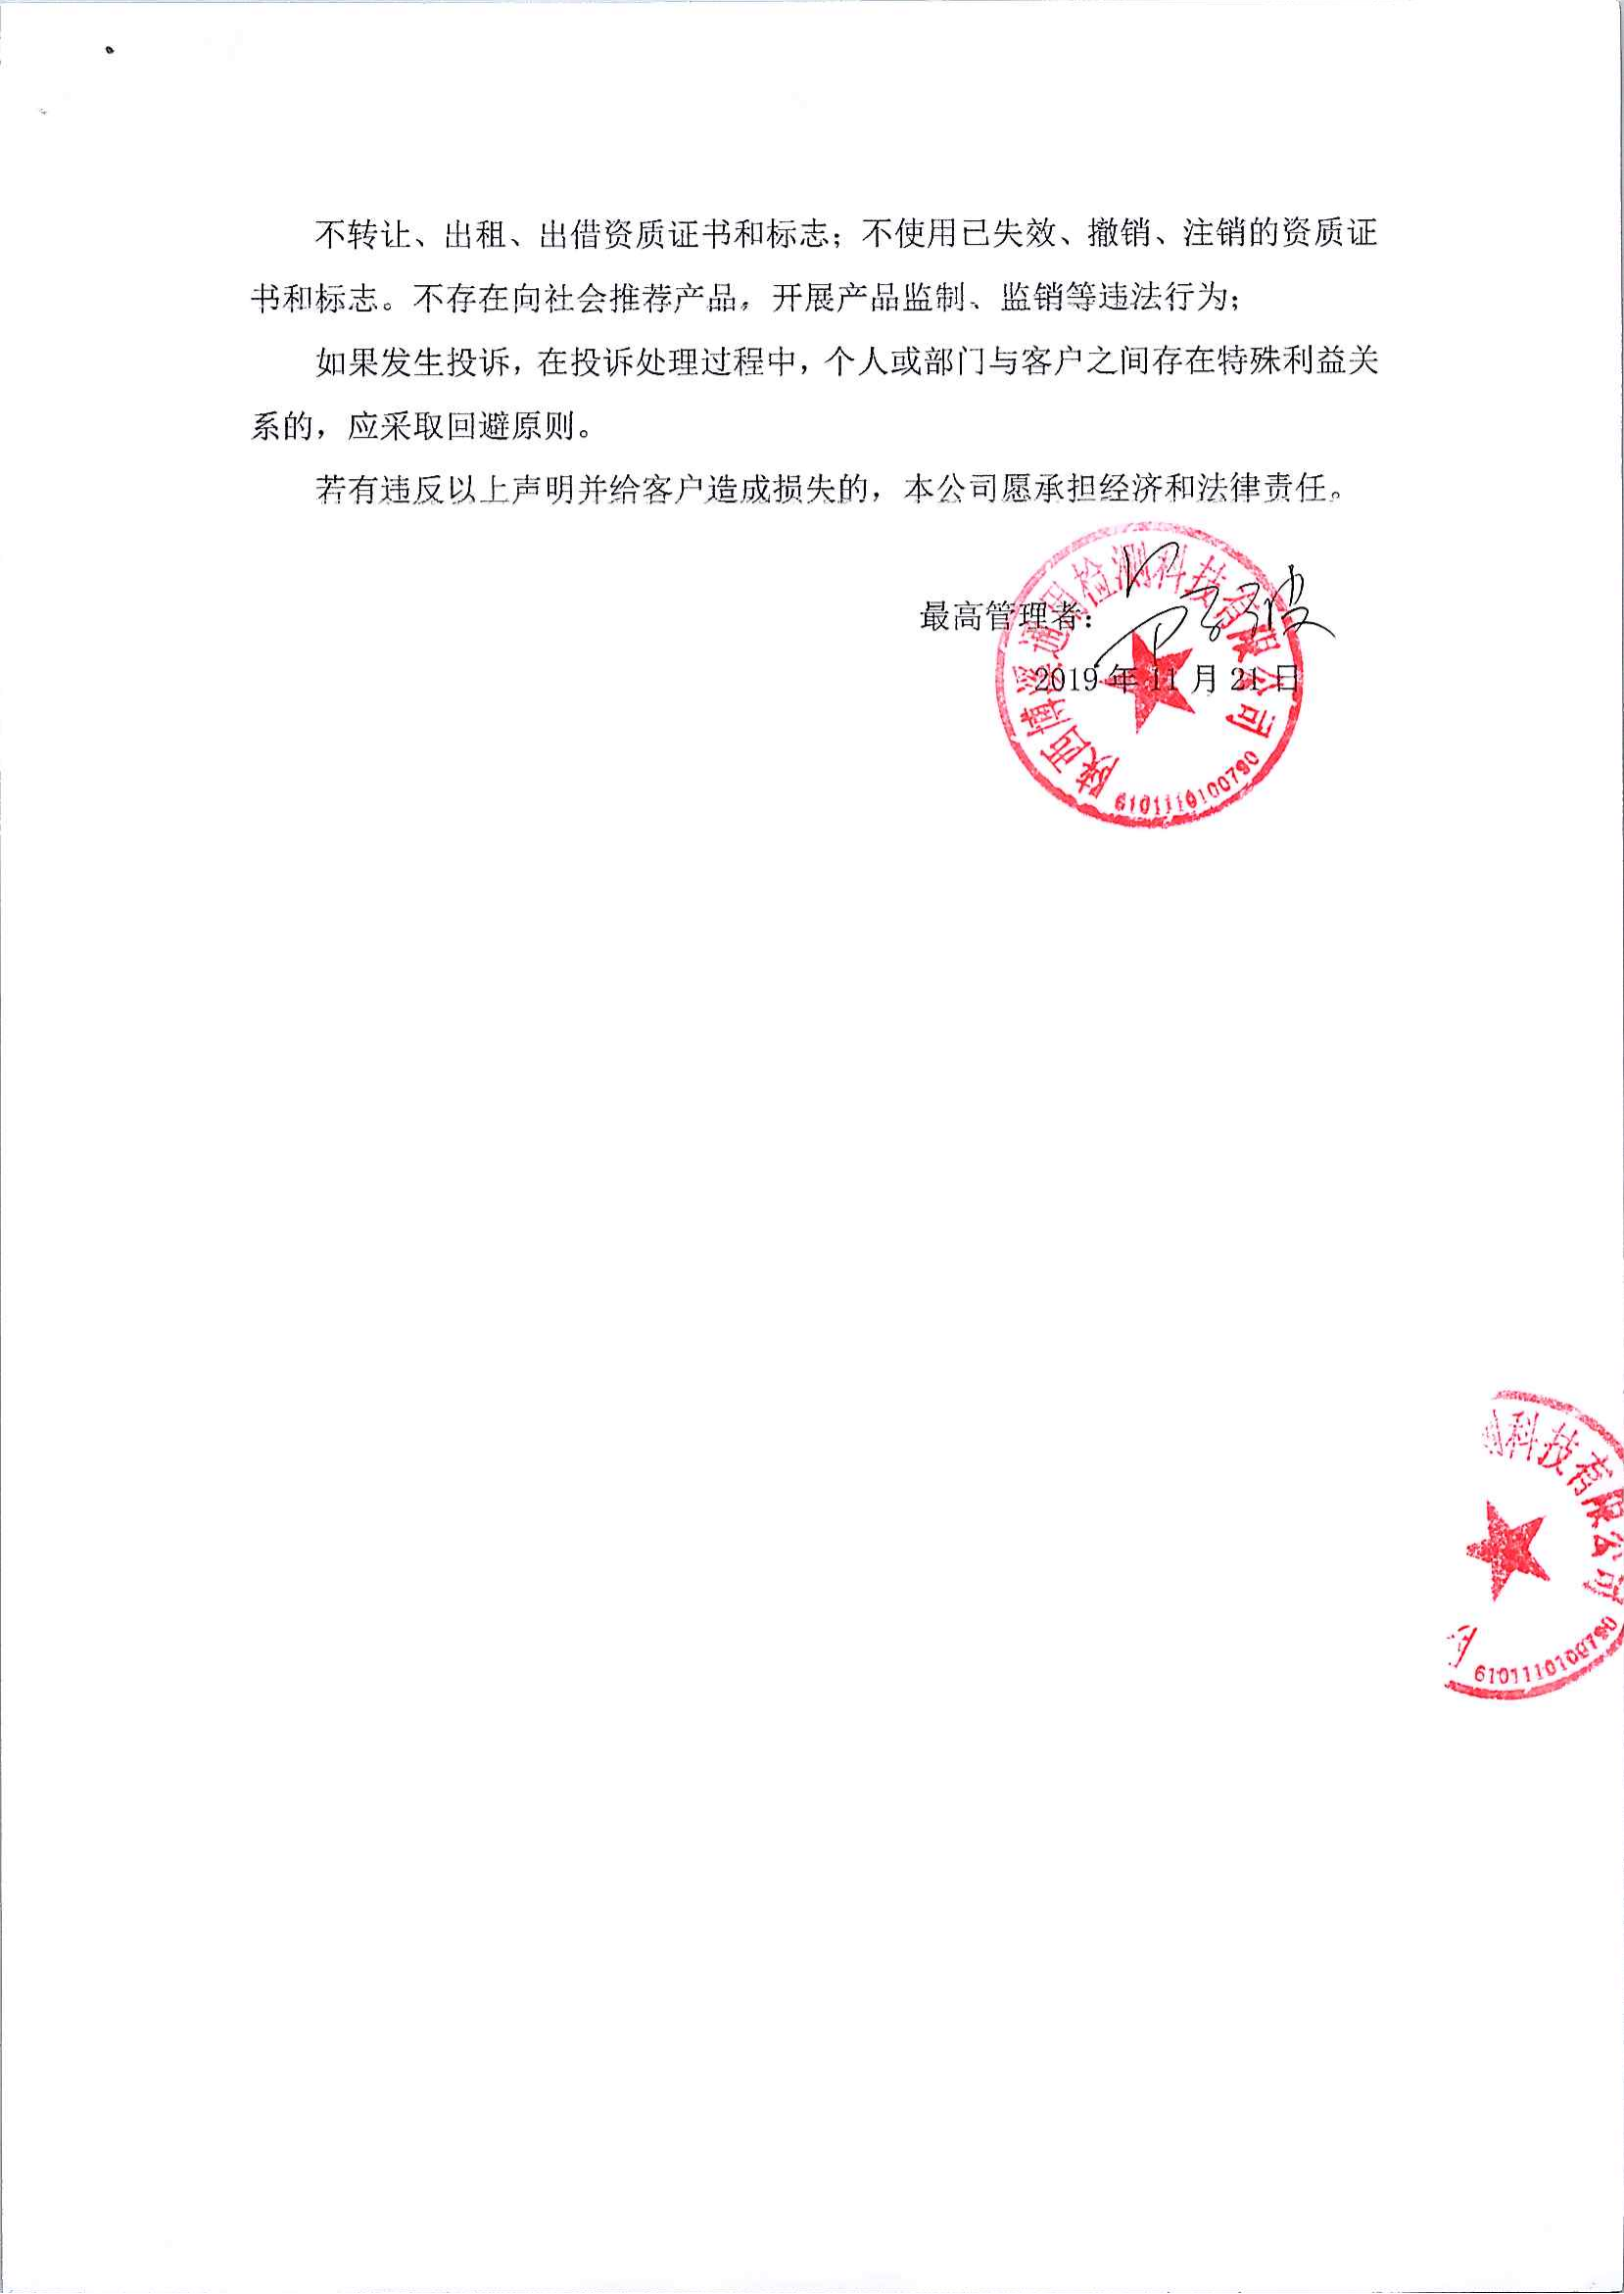 陕西博溪通用检测科技有限公司公正性声明2.png